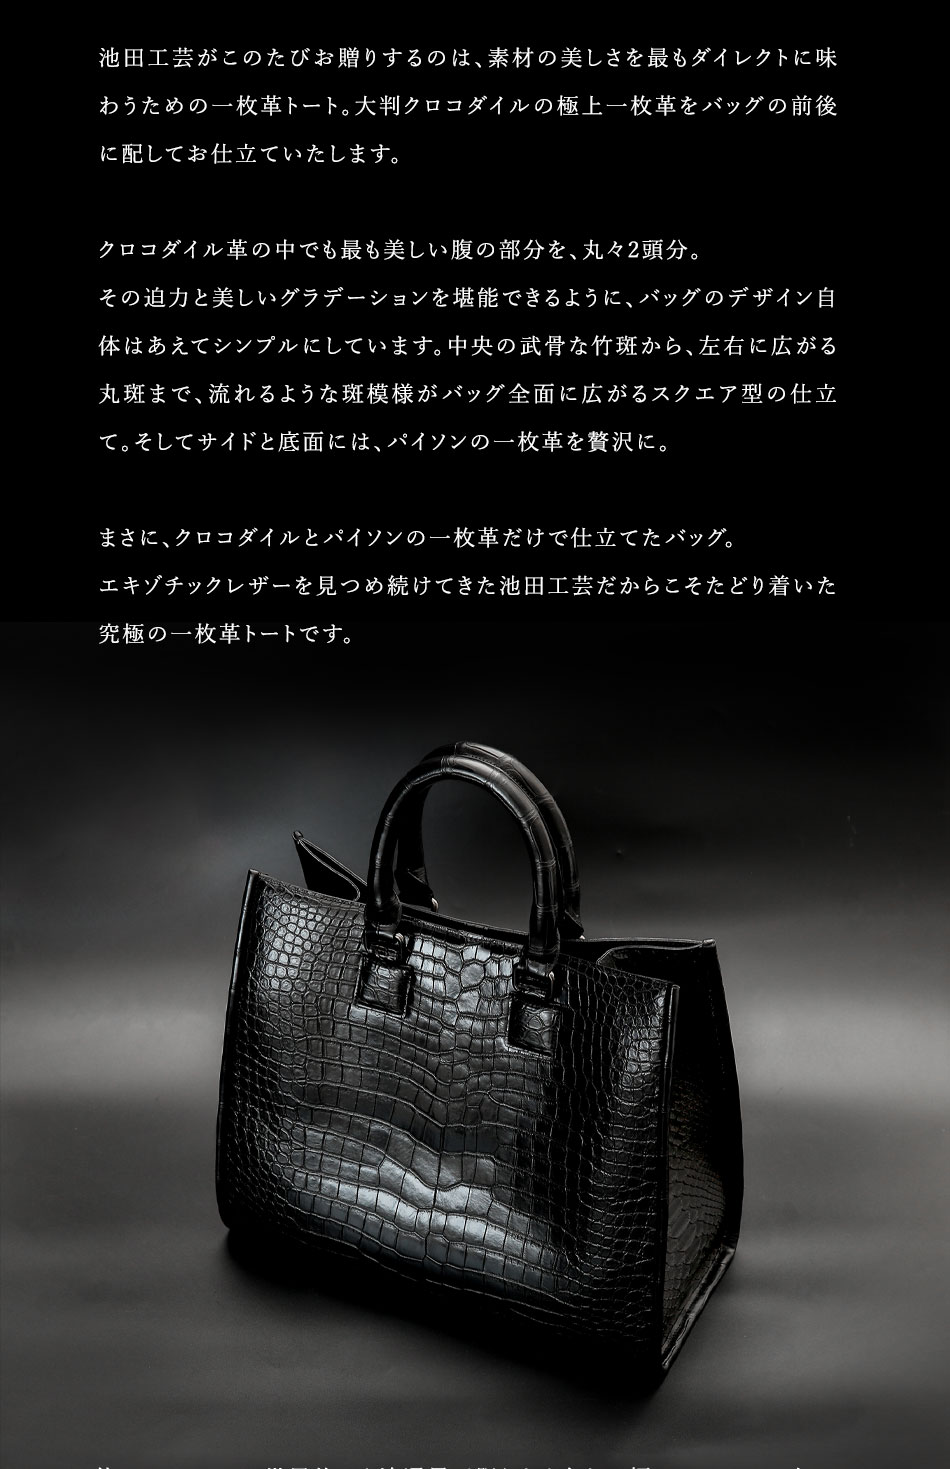 【本日限定5000円セール】デザインバッグ 究極のクロコ革